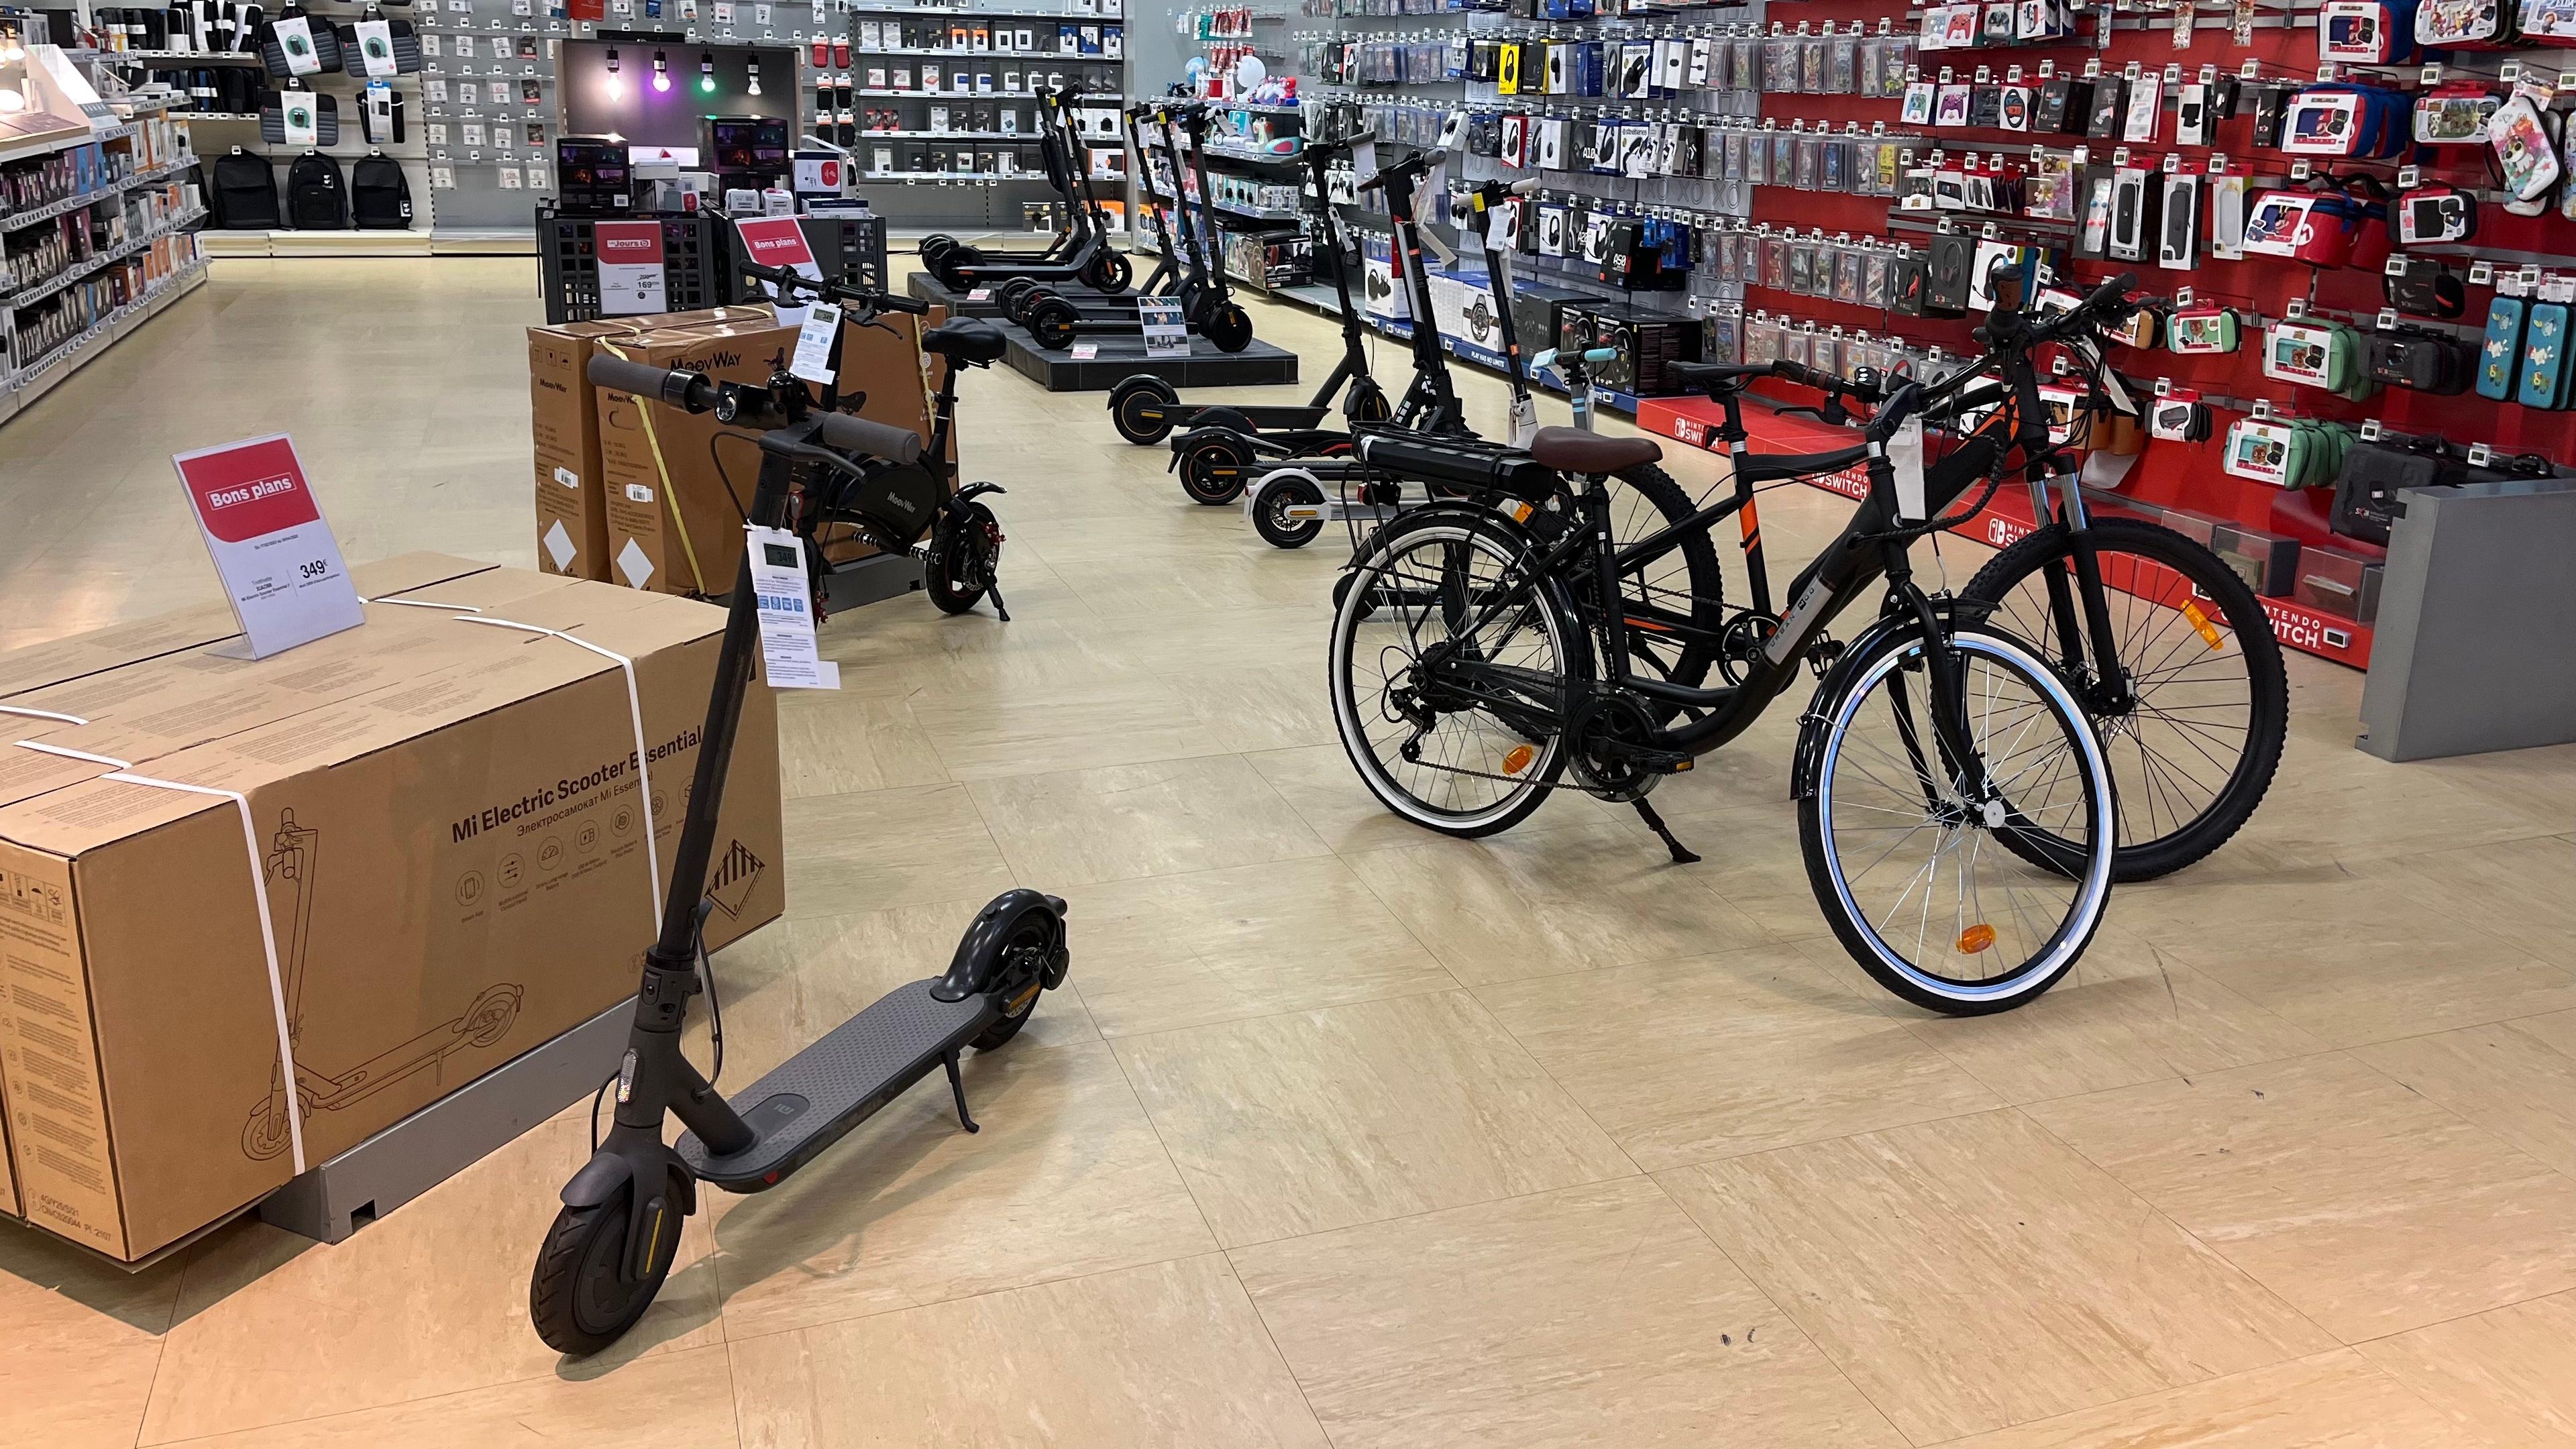 Espace mobilité du magasin Boulanger Auxerre. On retrouve des trottinettes électriques et des vélos électriques.